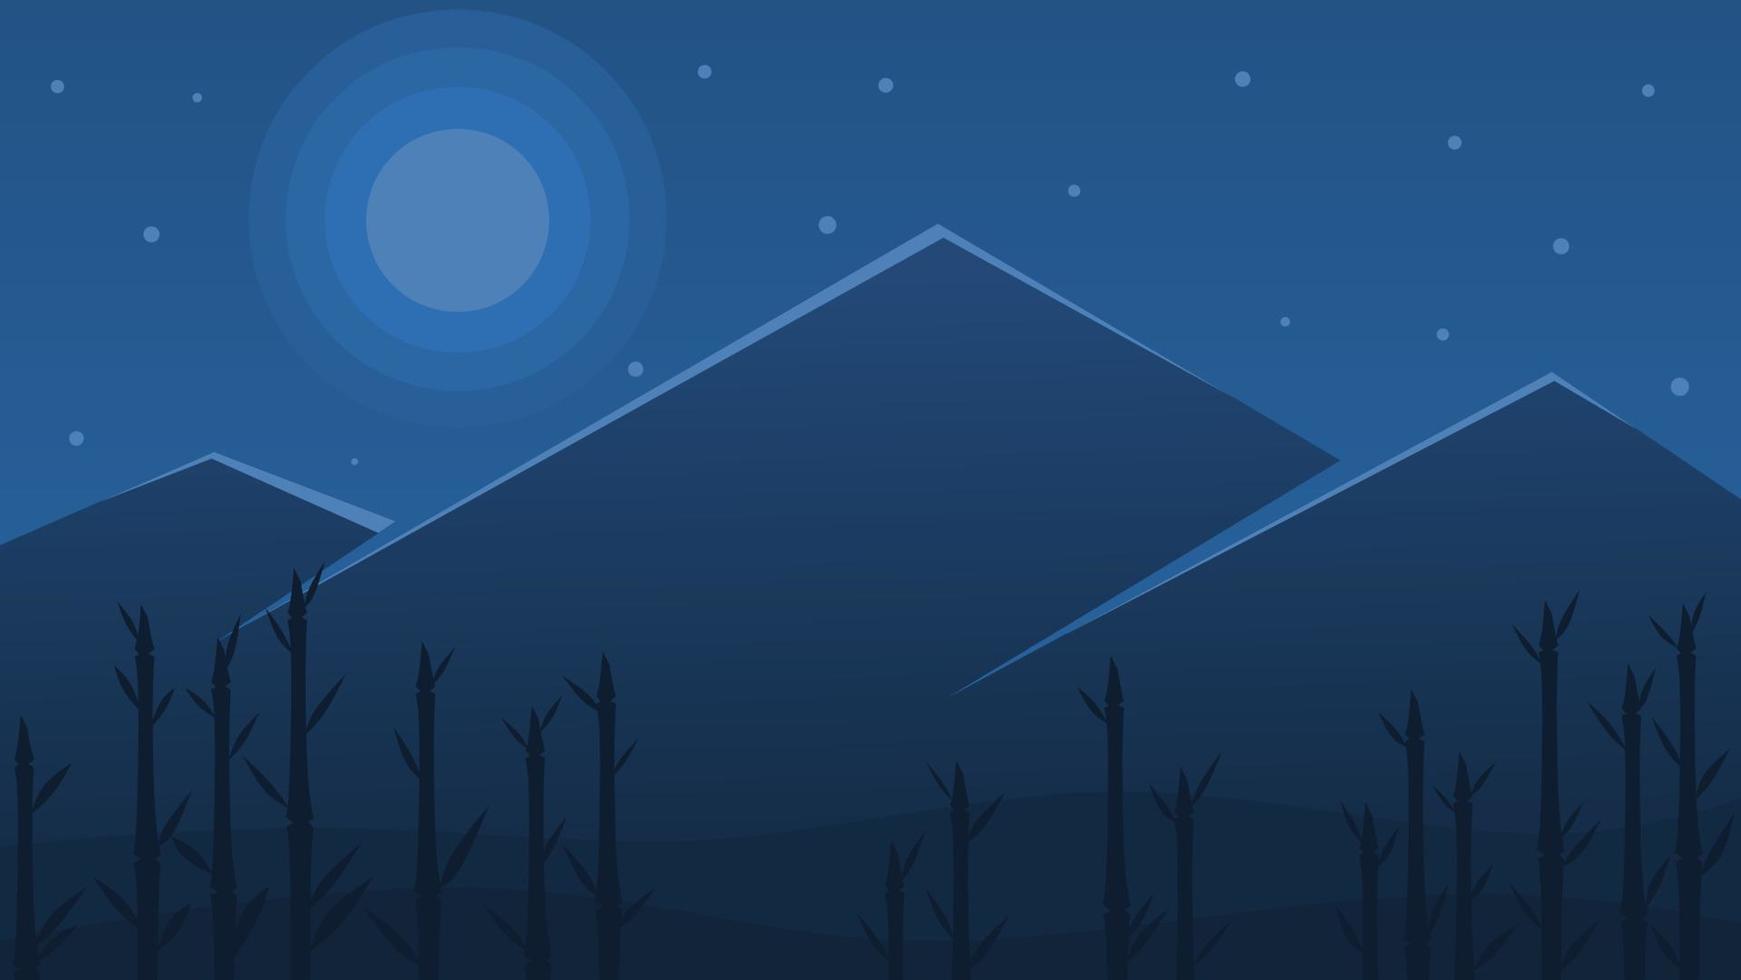 Nachtnatur-Hintergrundillustration mit Bambusbäumen vektor